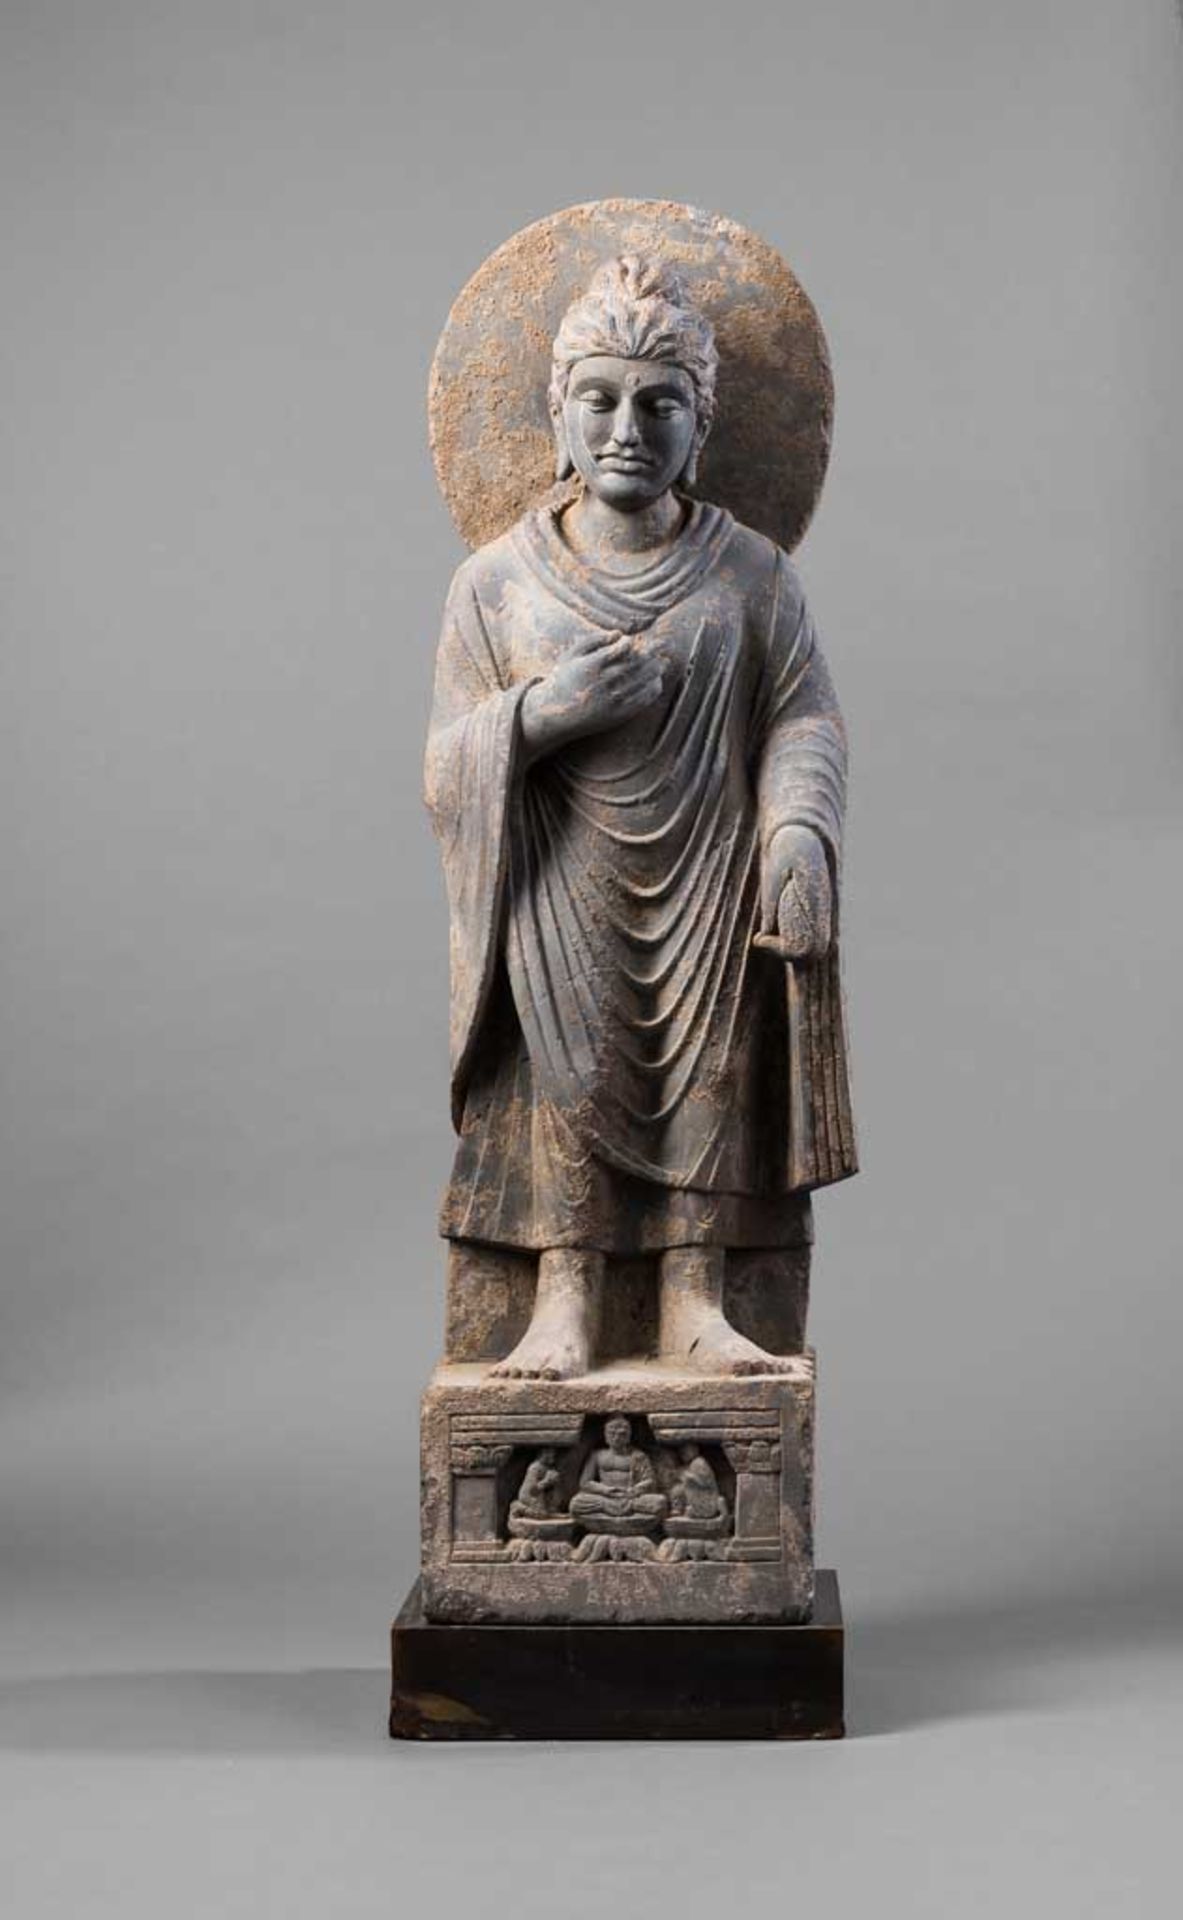 Stehender Buddha. Plinthensockel mit Adoranten. Den Kopf leicht zur Seite geneigt. Gesichtszüge